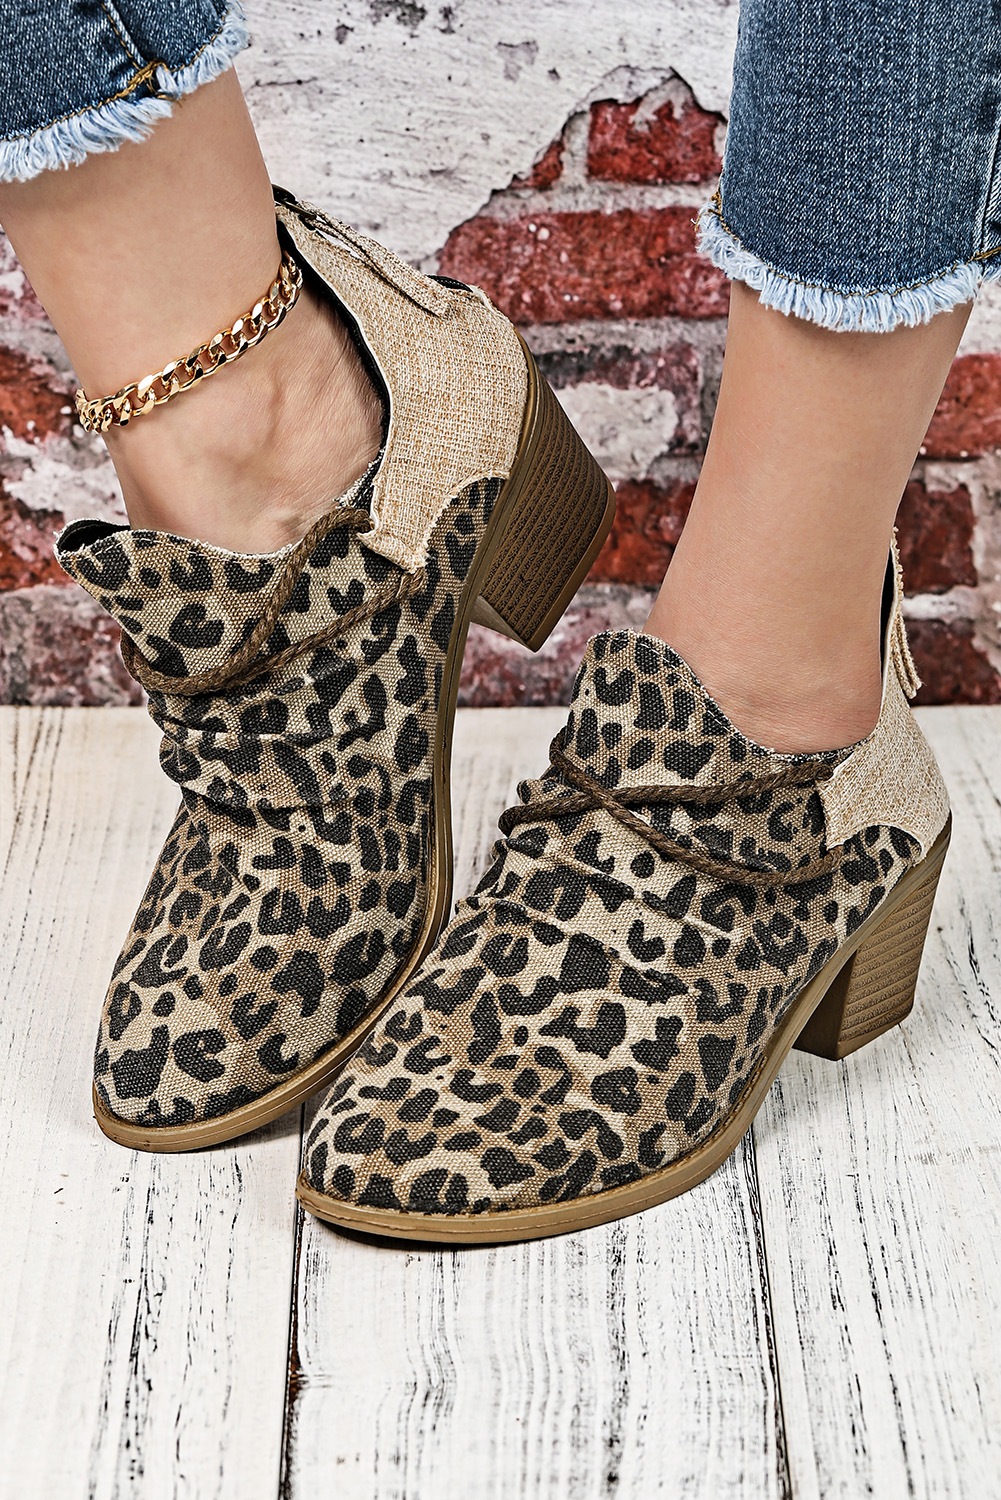 New arrivals 2023 Khaki Leopard Print Colorblock Ankle BOOTS